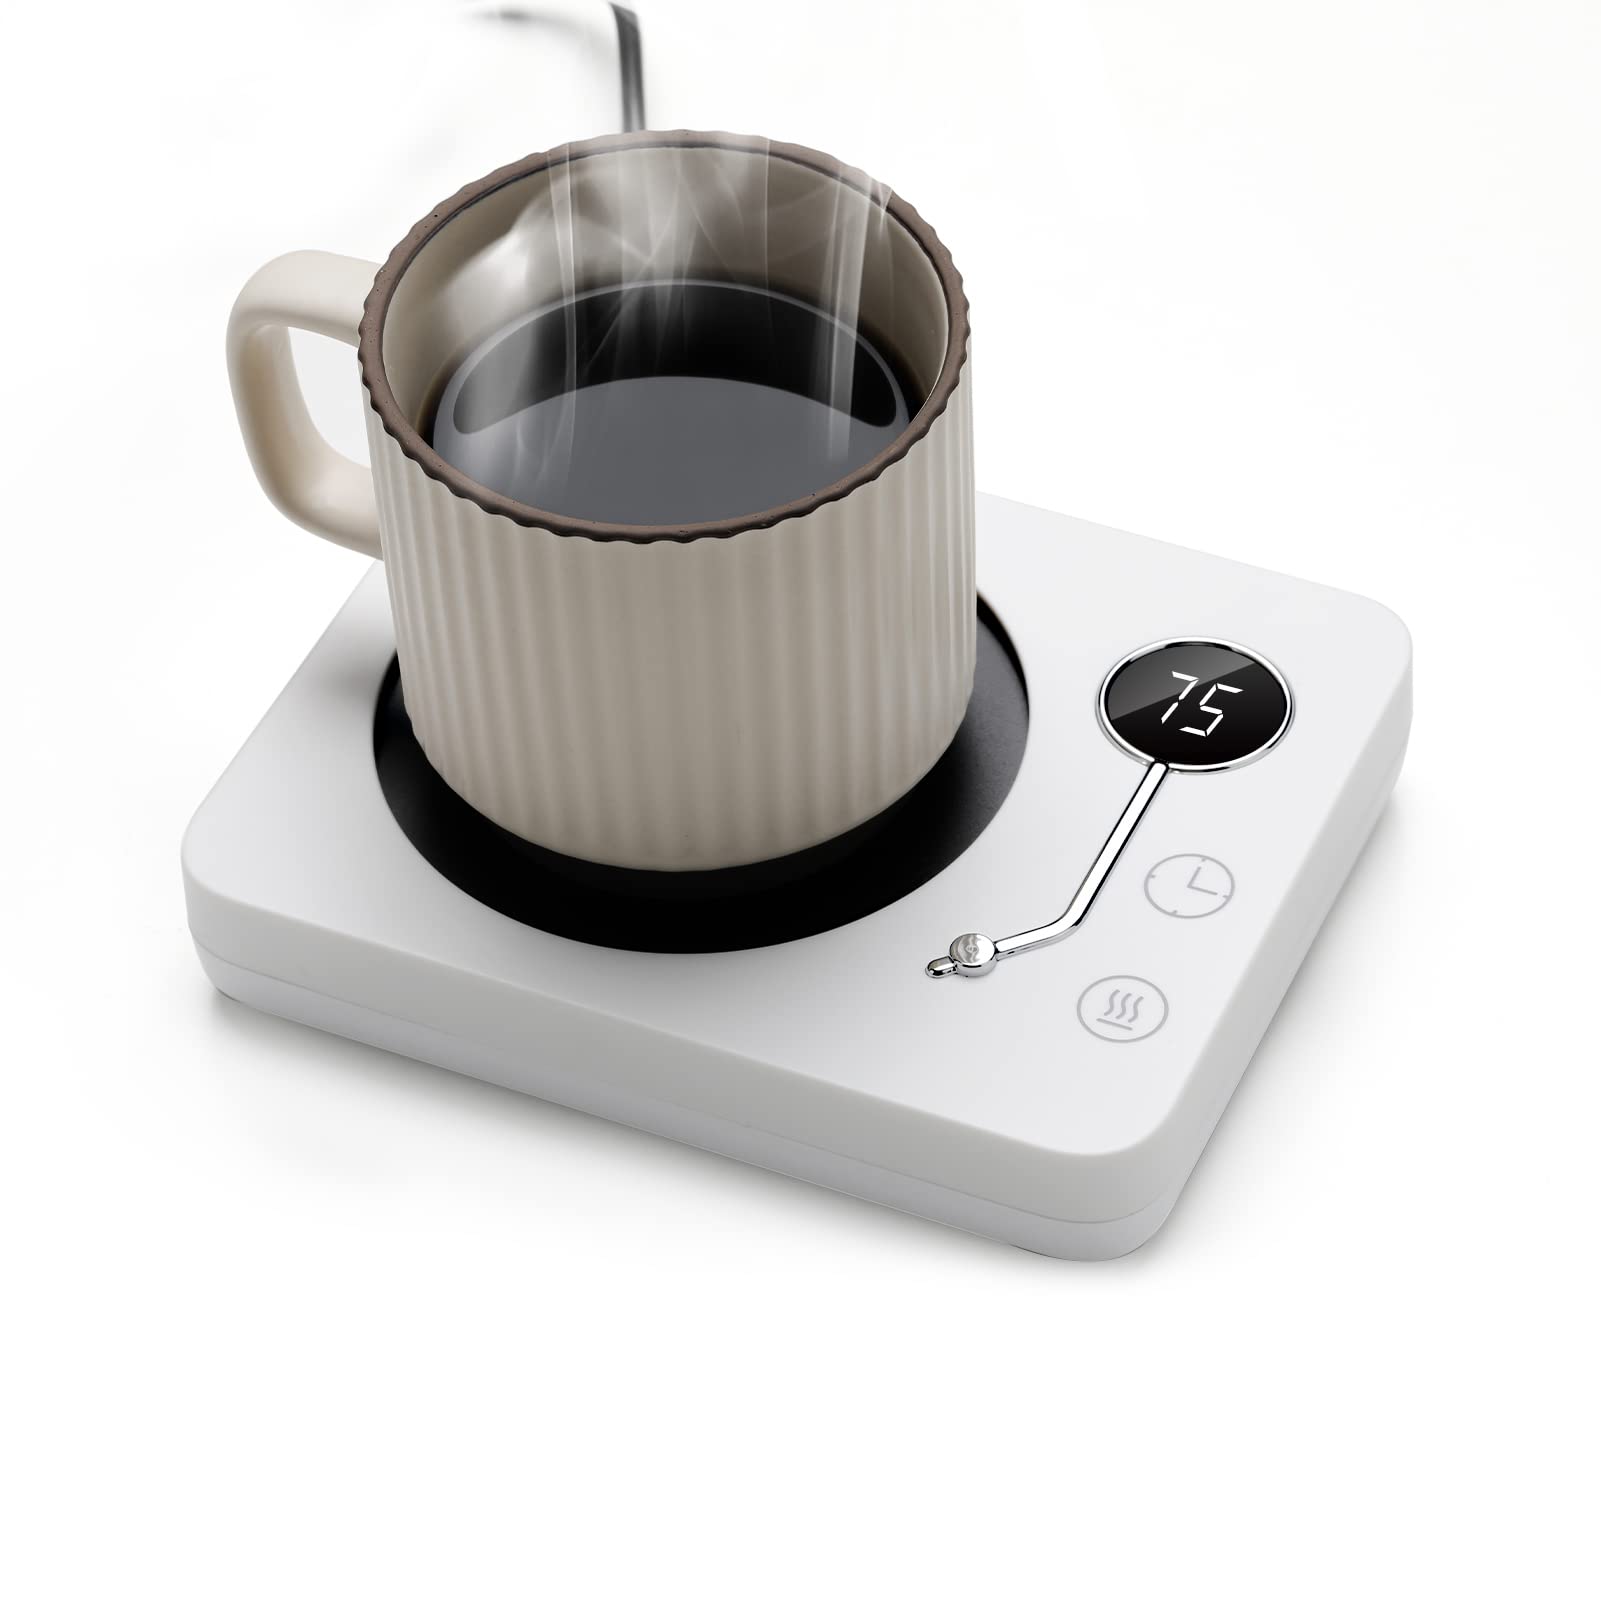 Kyerlish カップウォーマー コーヒー保温コースター マグカップウォーマー ドリンクウォーマー 3段温度設定55度 65度…